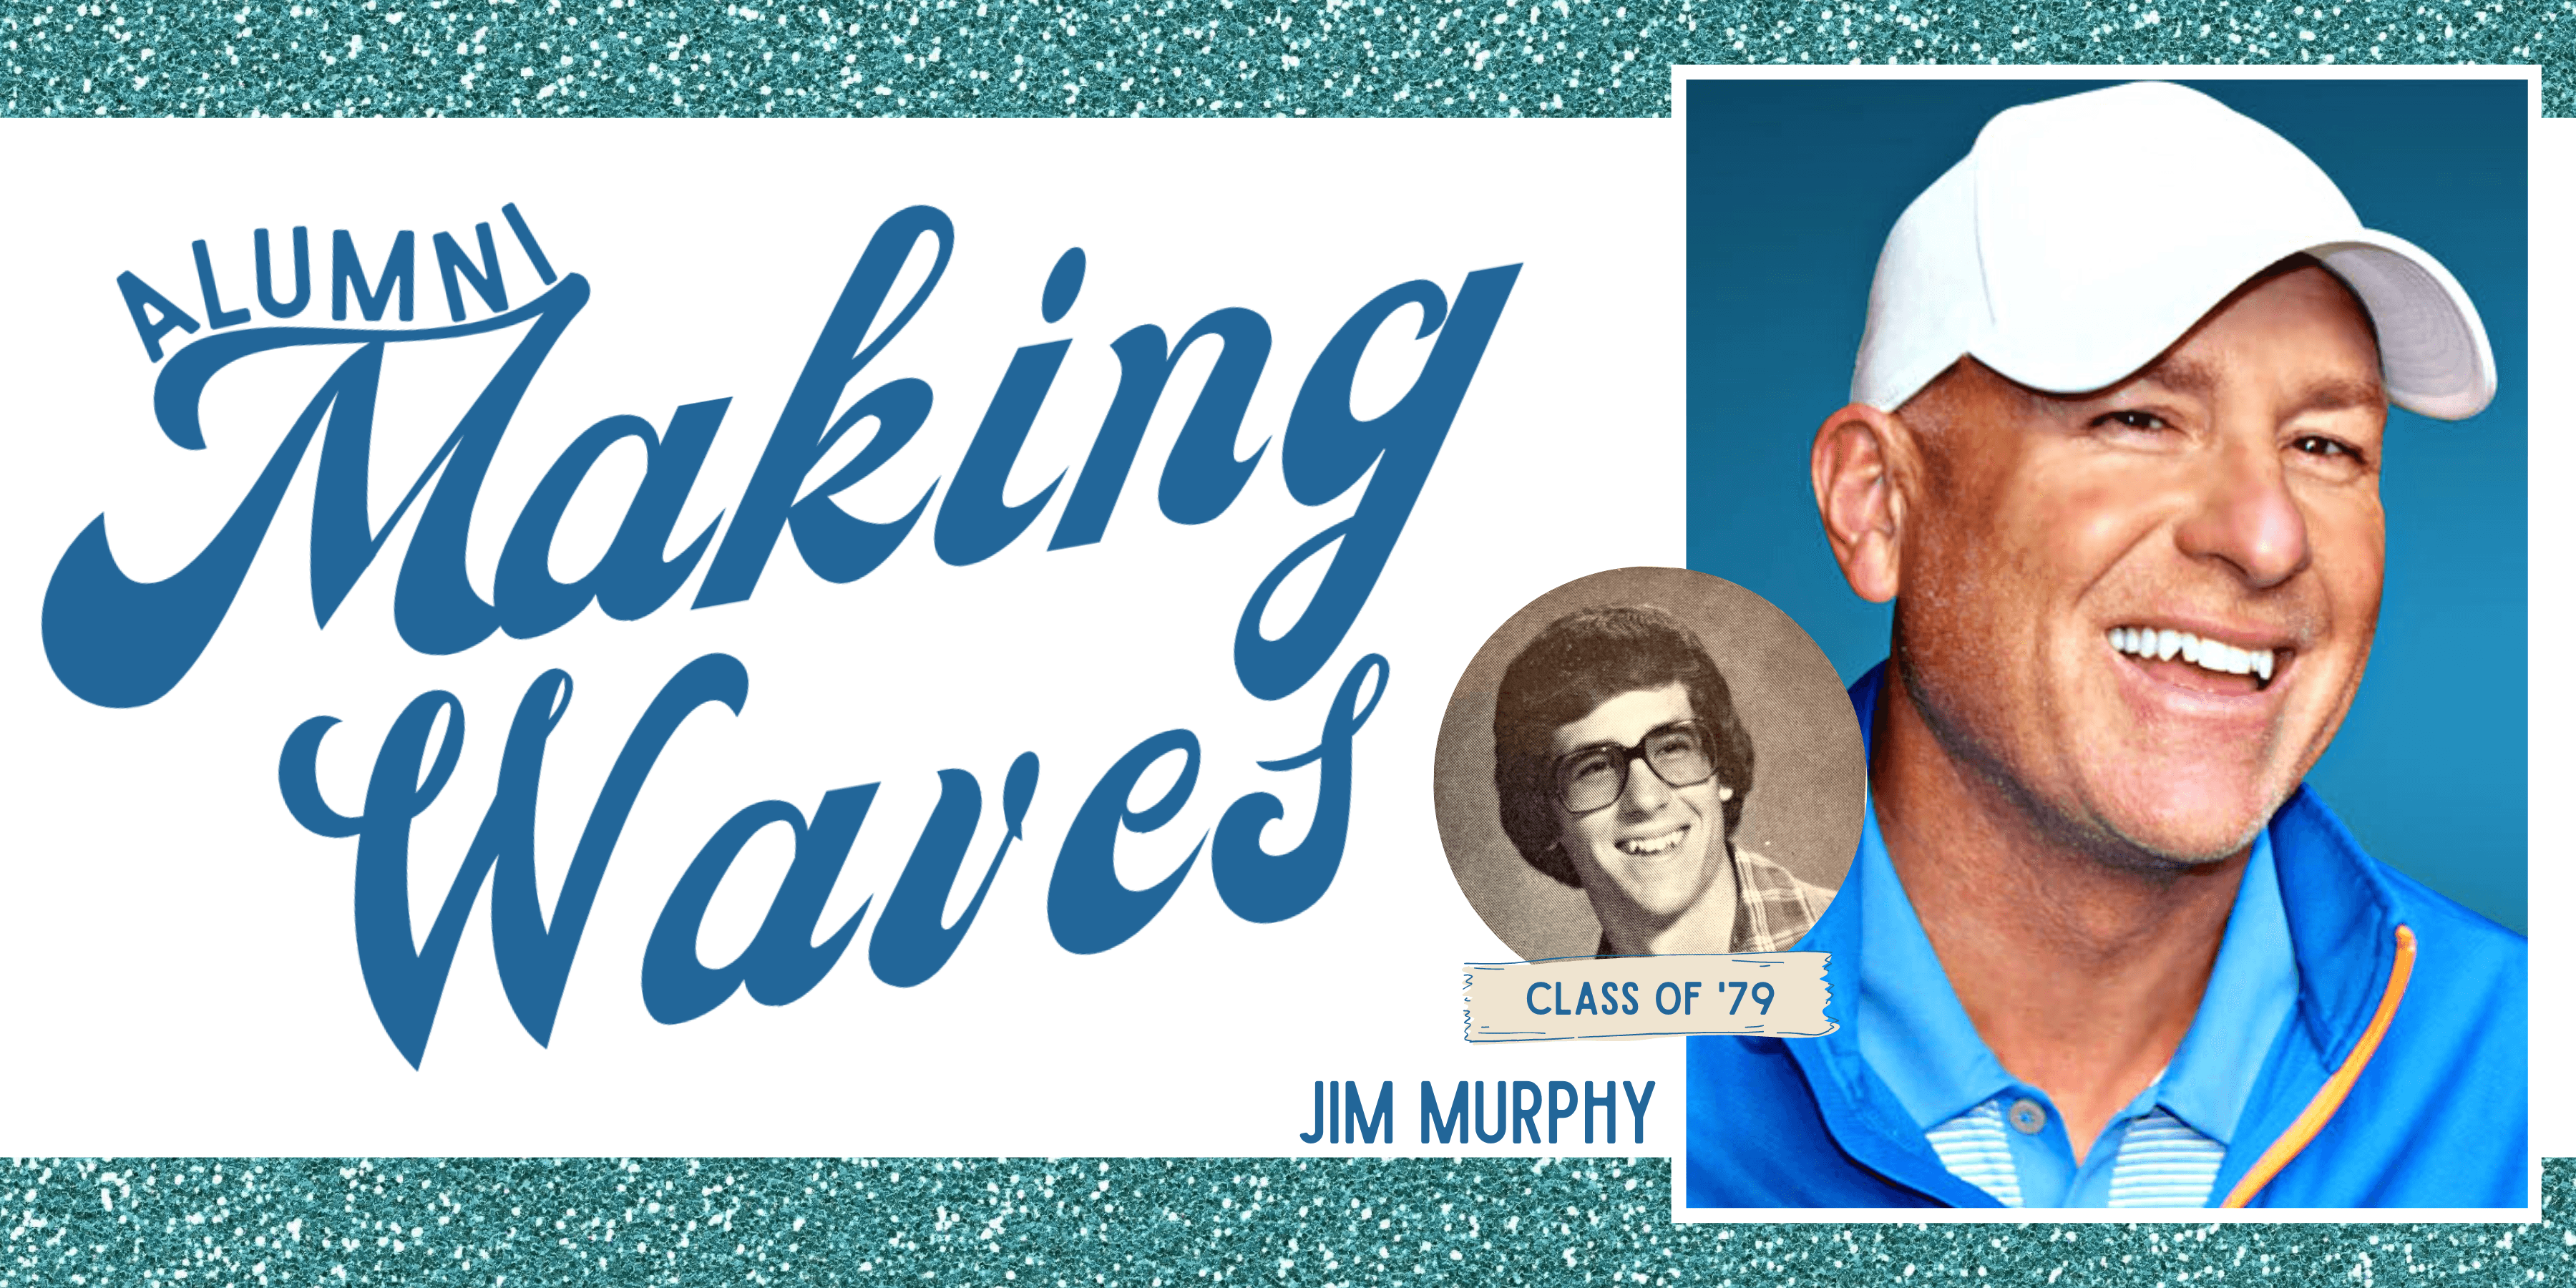 Alumni Making Waves: Jim Murphy